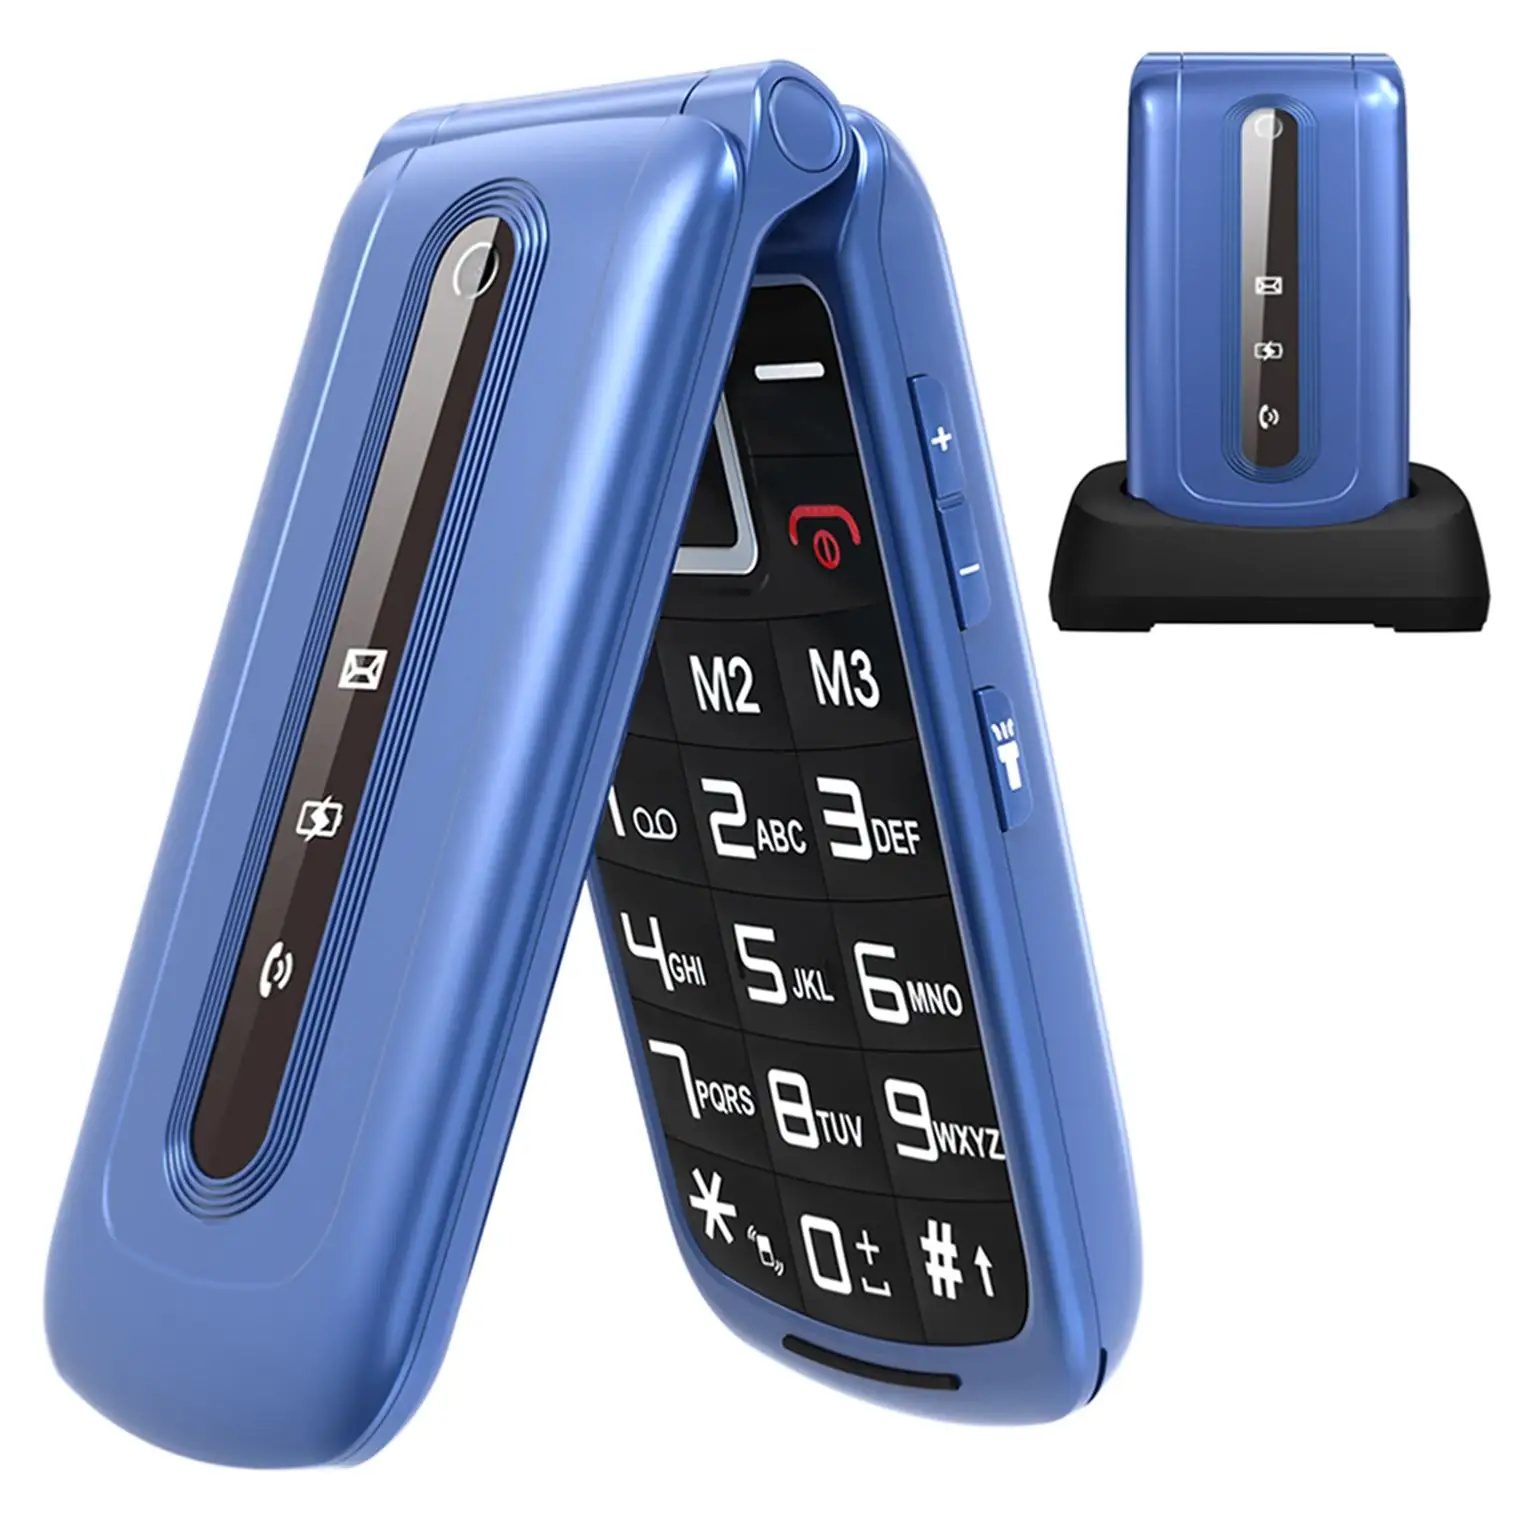 Yepyeni 2G Flip telefon GSM 2.4 ''ekran temel cep telefonu LCD özelliği telefon FM Bluetooth yaşlı insanlar için